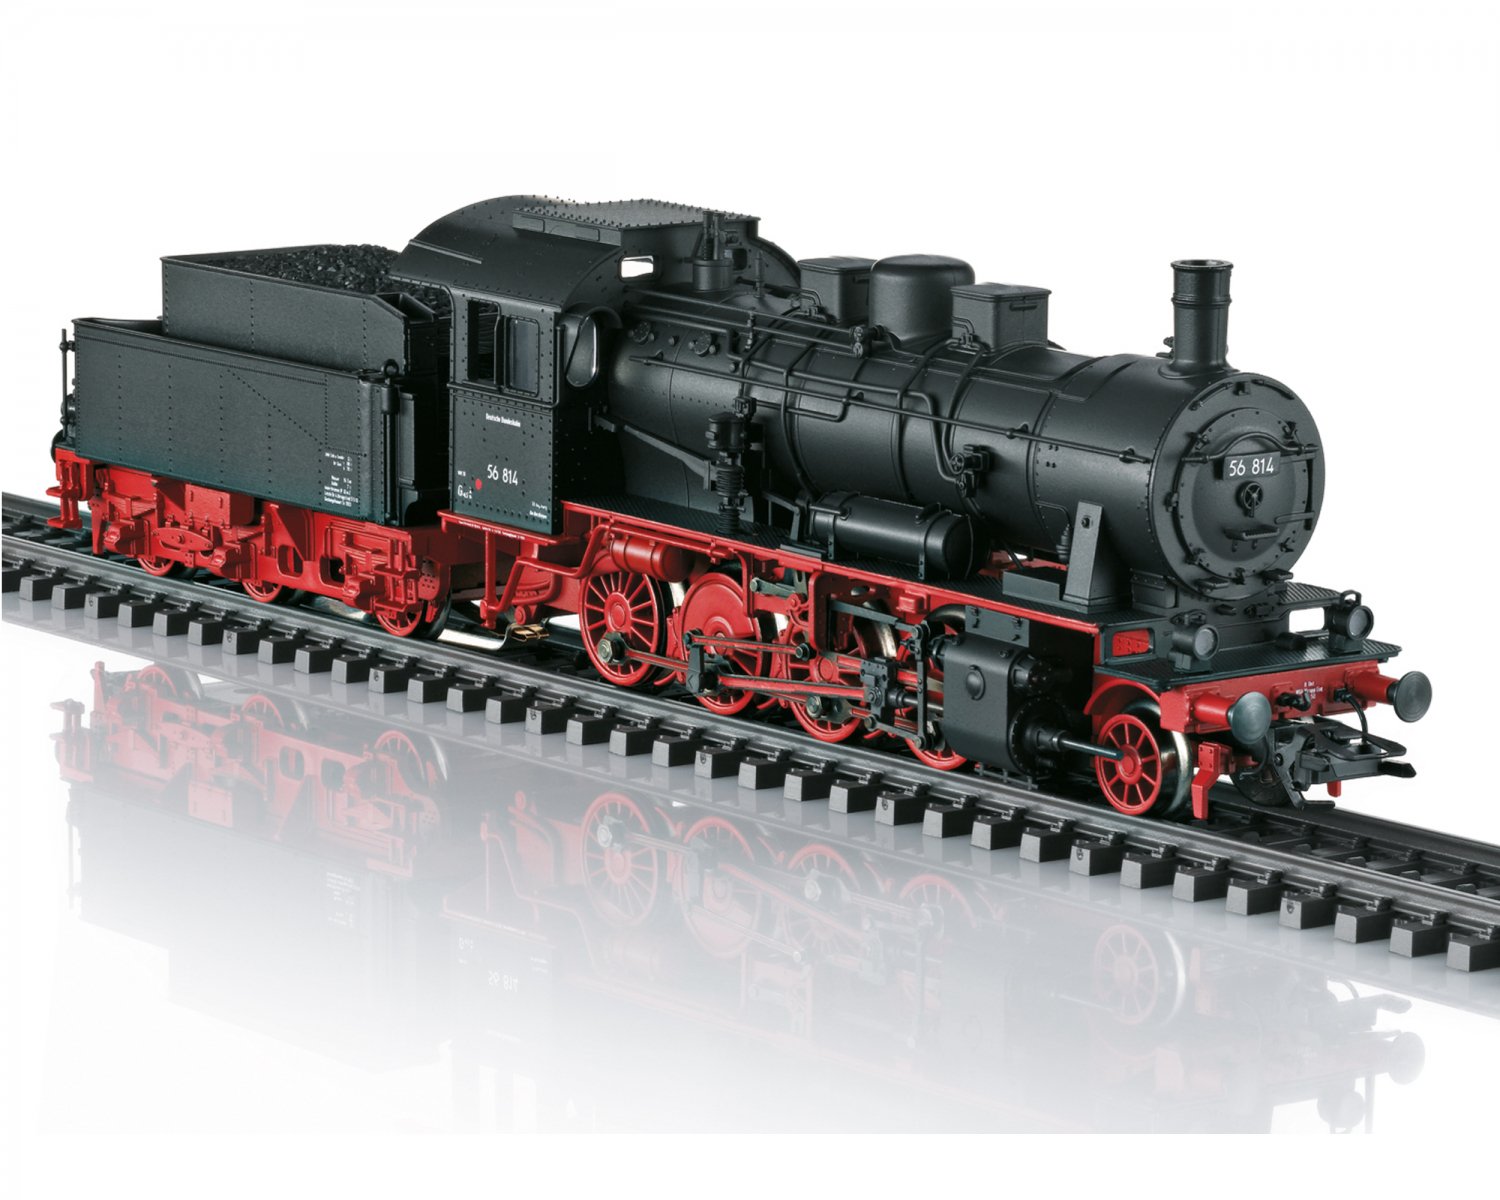 メルクリン5744ドイツ製鉄道模型 DB553964 marklin 機関車 